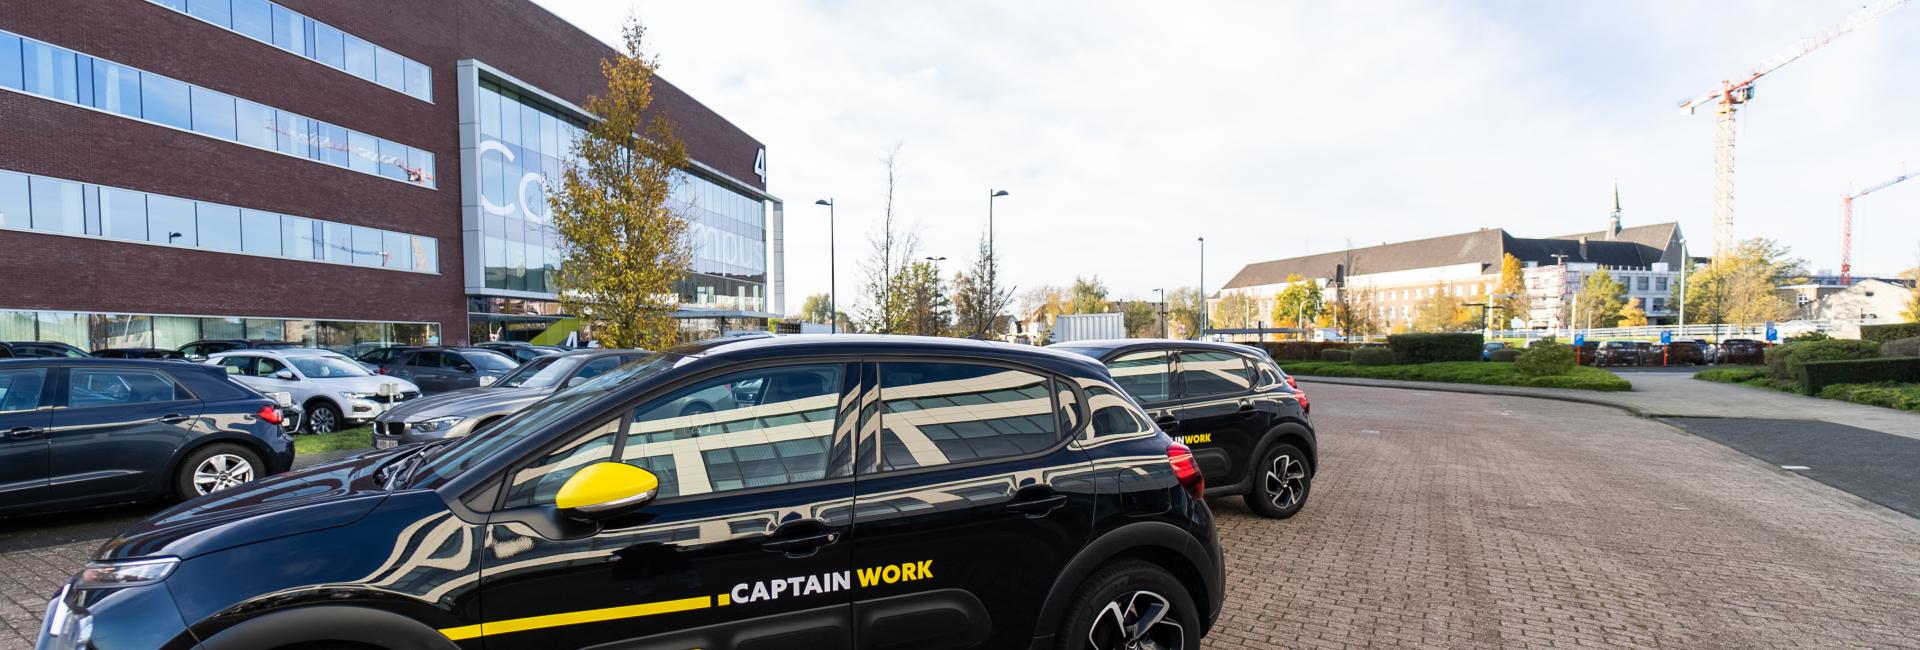 CaptainWork new office nieuw kantoor auto's